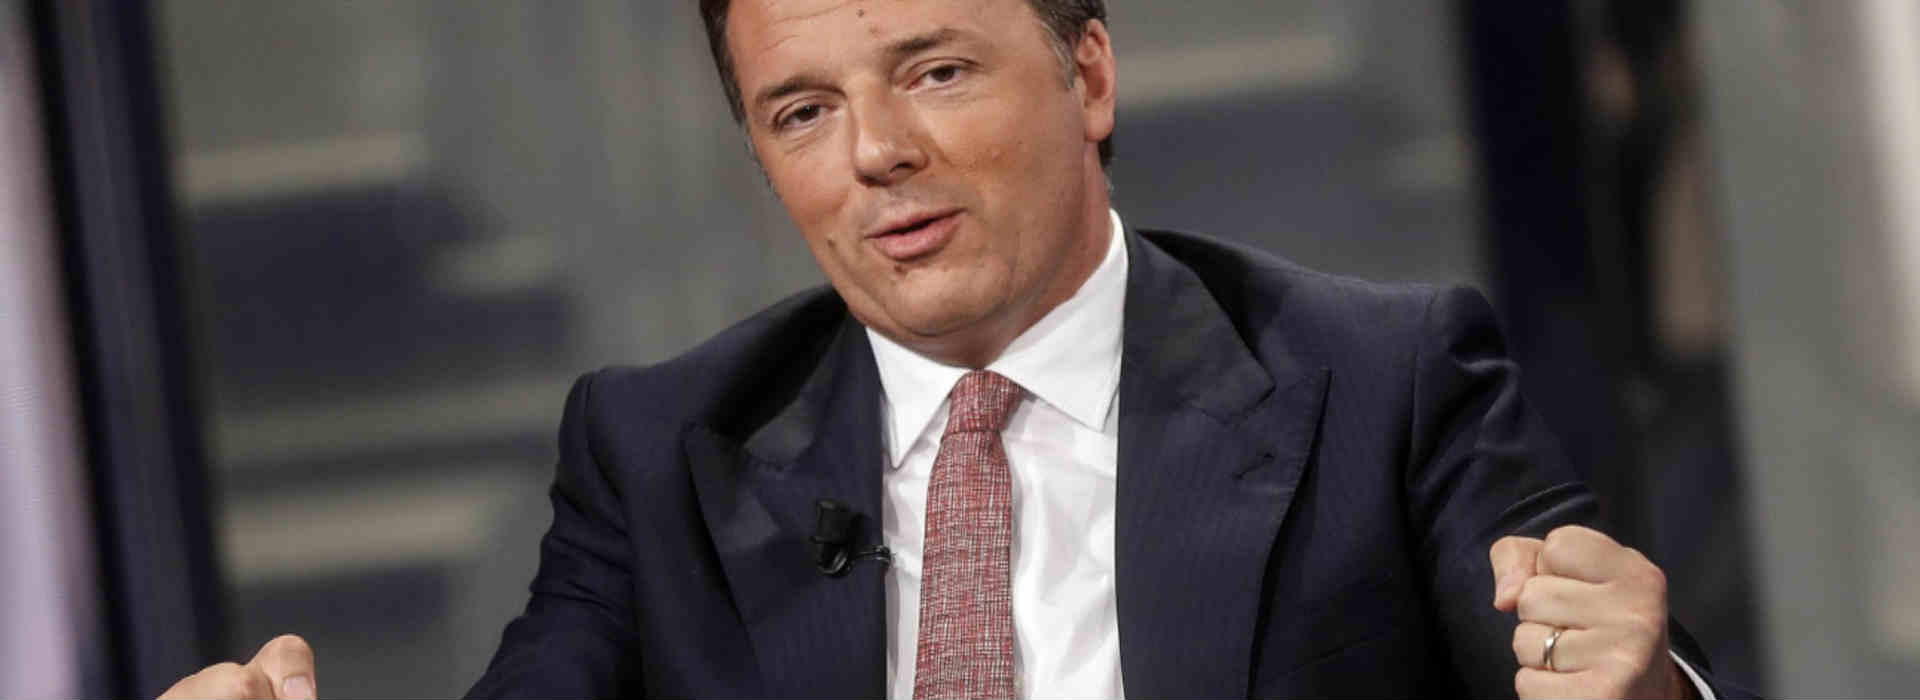 Matteo Renzi stringe pugni ce parla della fondazione Open